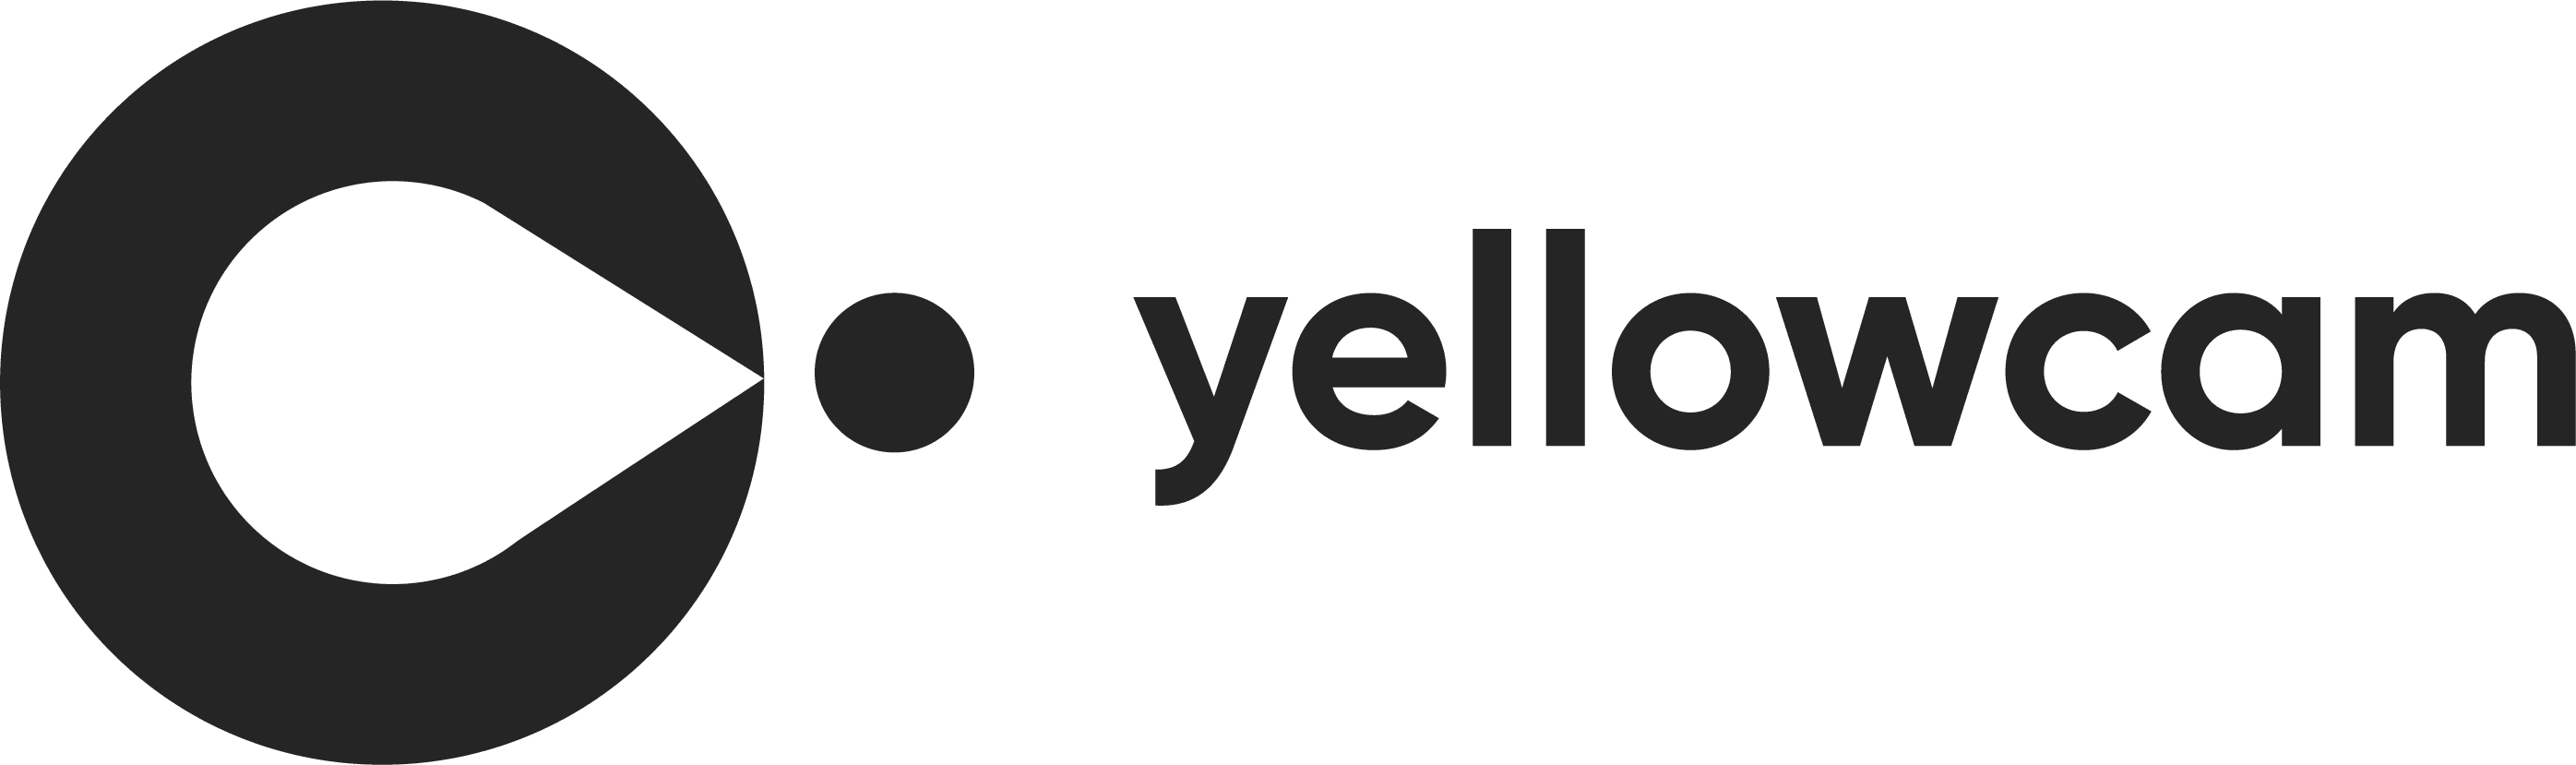 Yellowcam